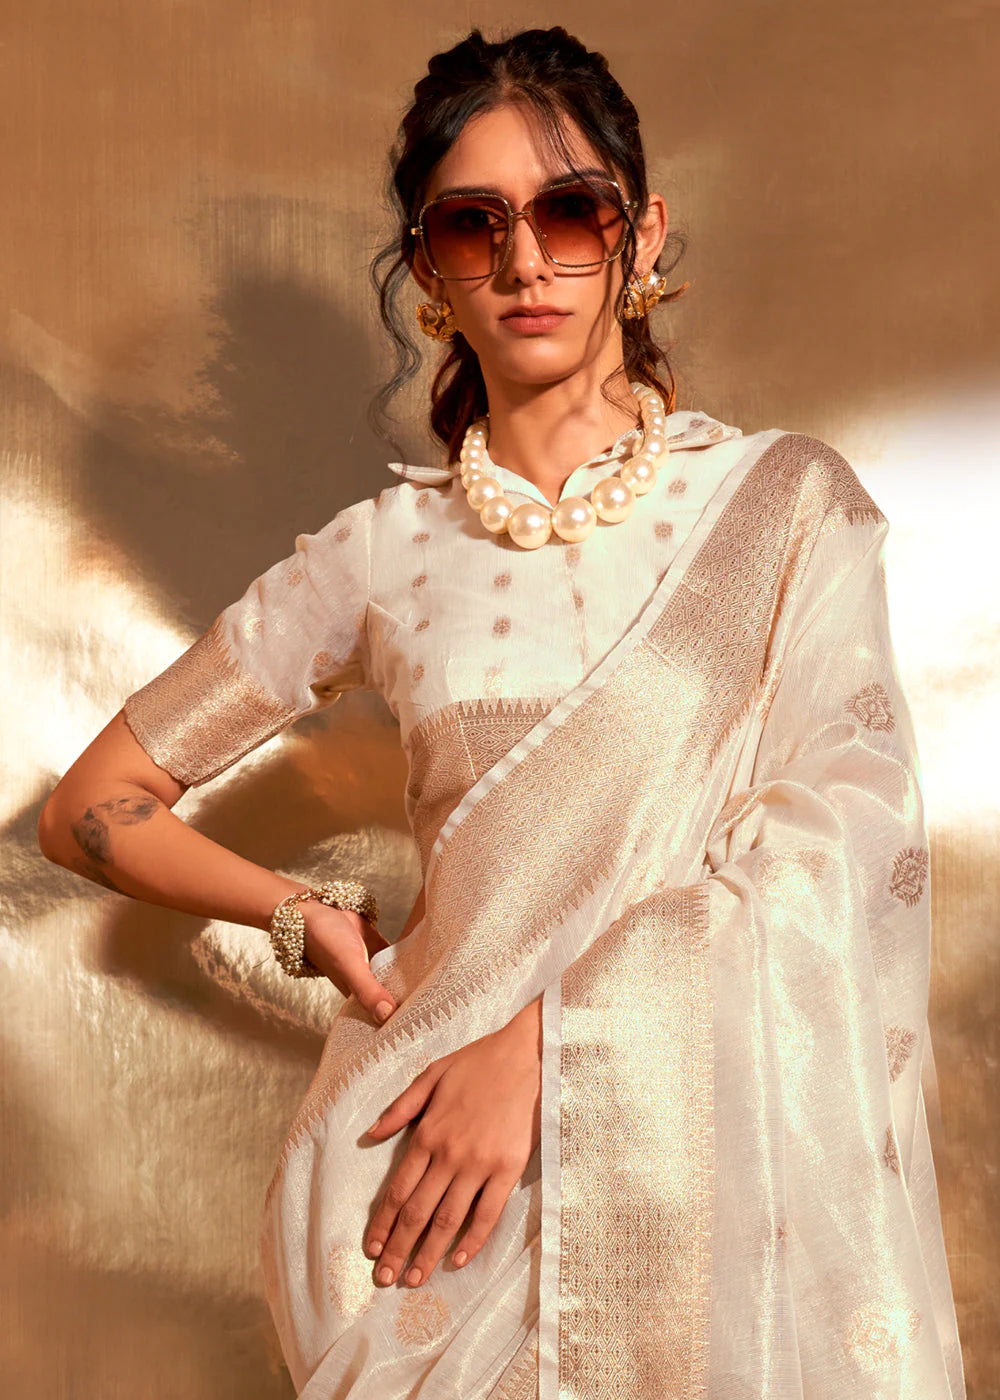 WHITE Zari Woven Tissue Silk Saree with Paithani Pallu